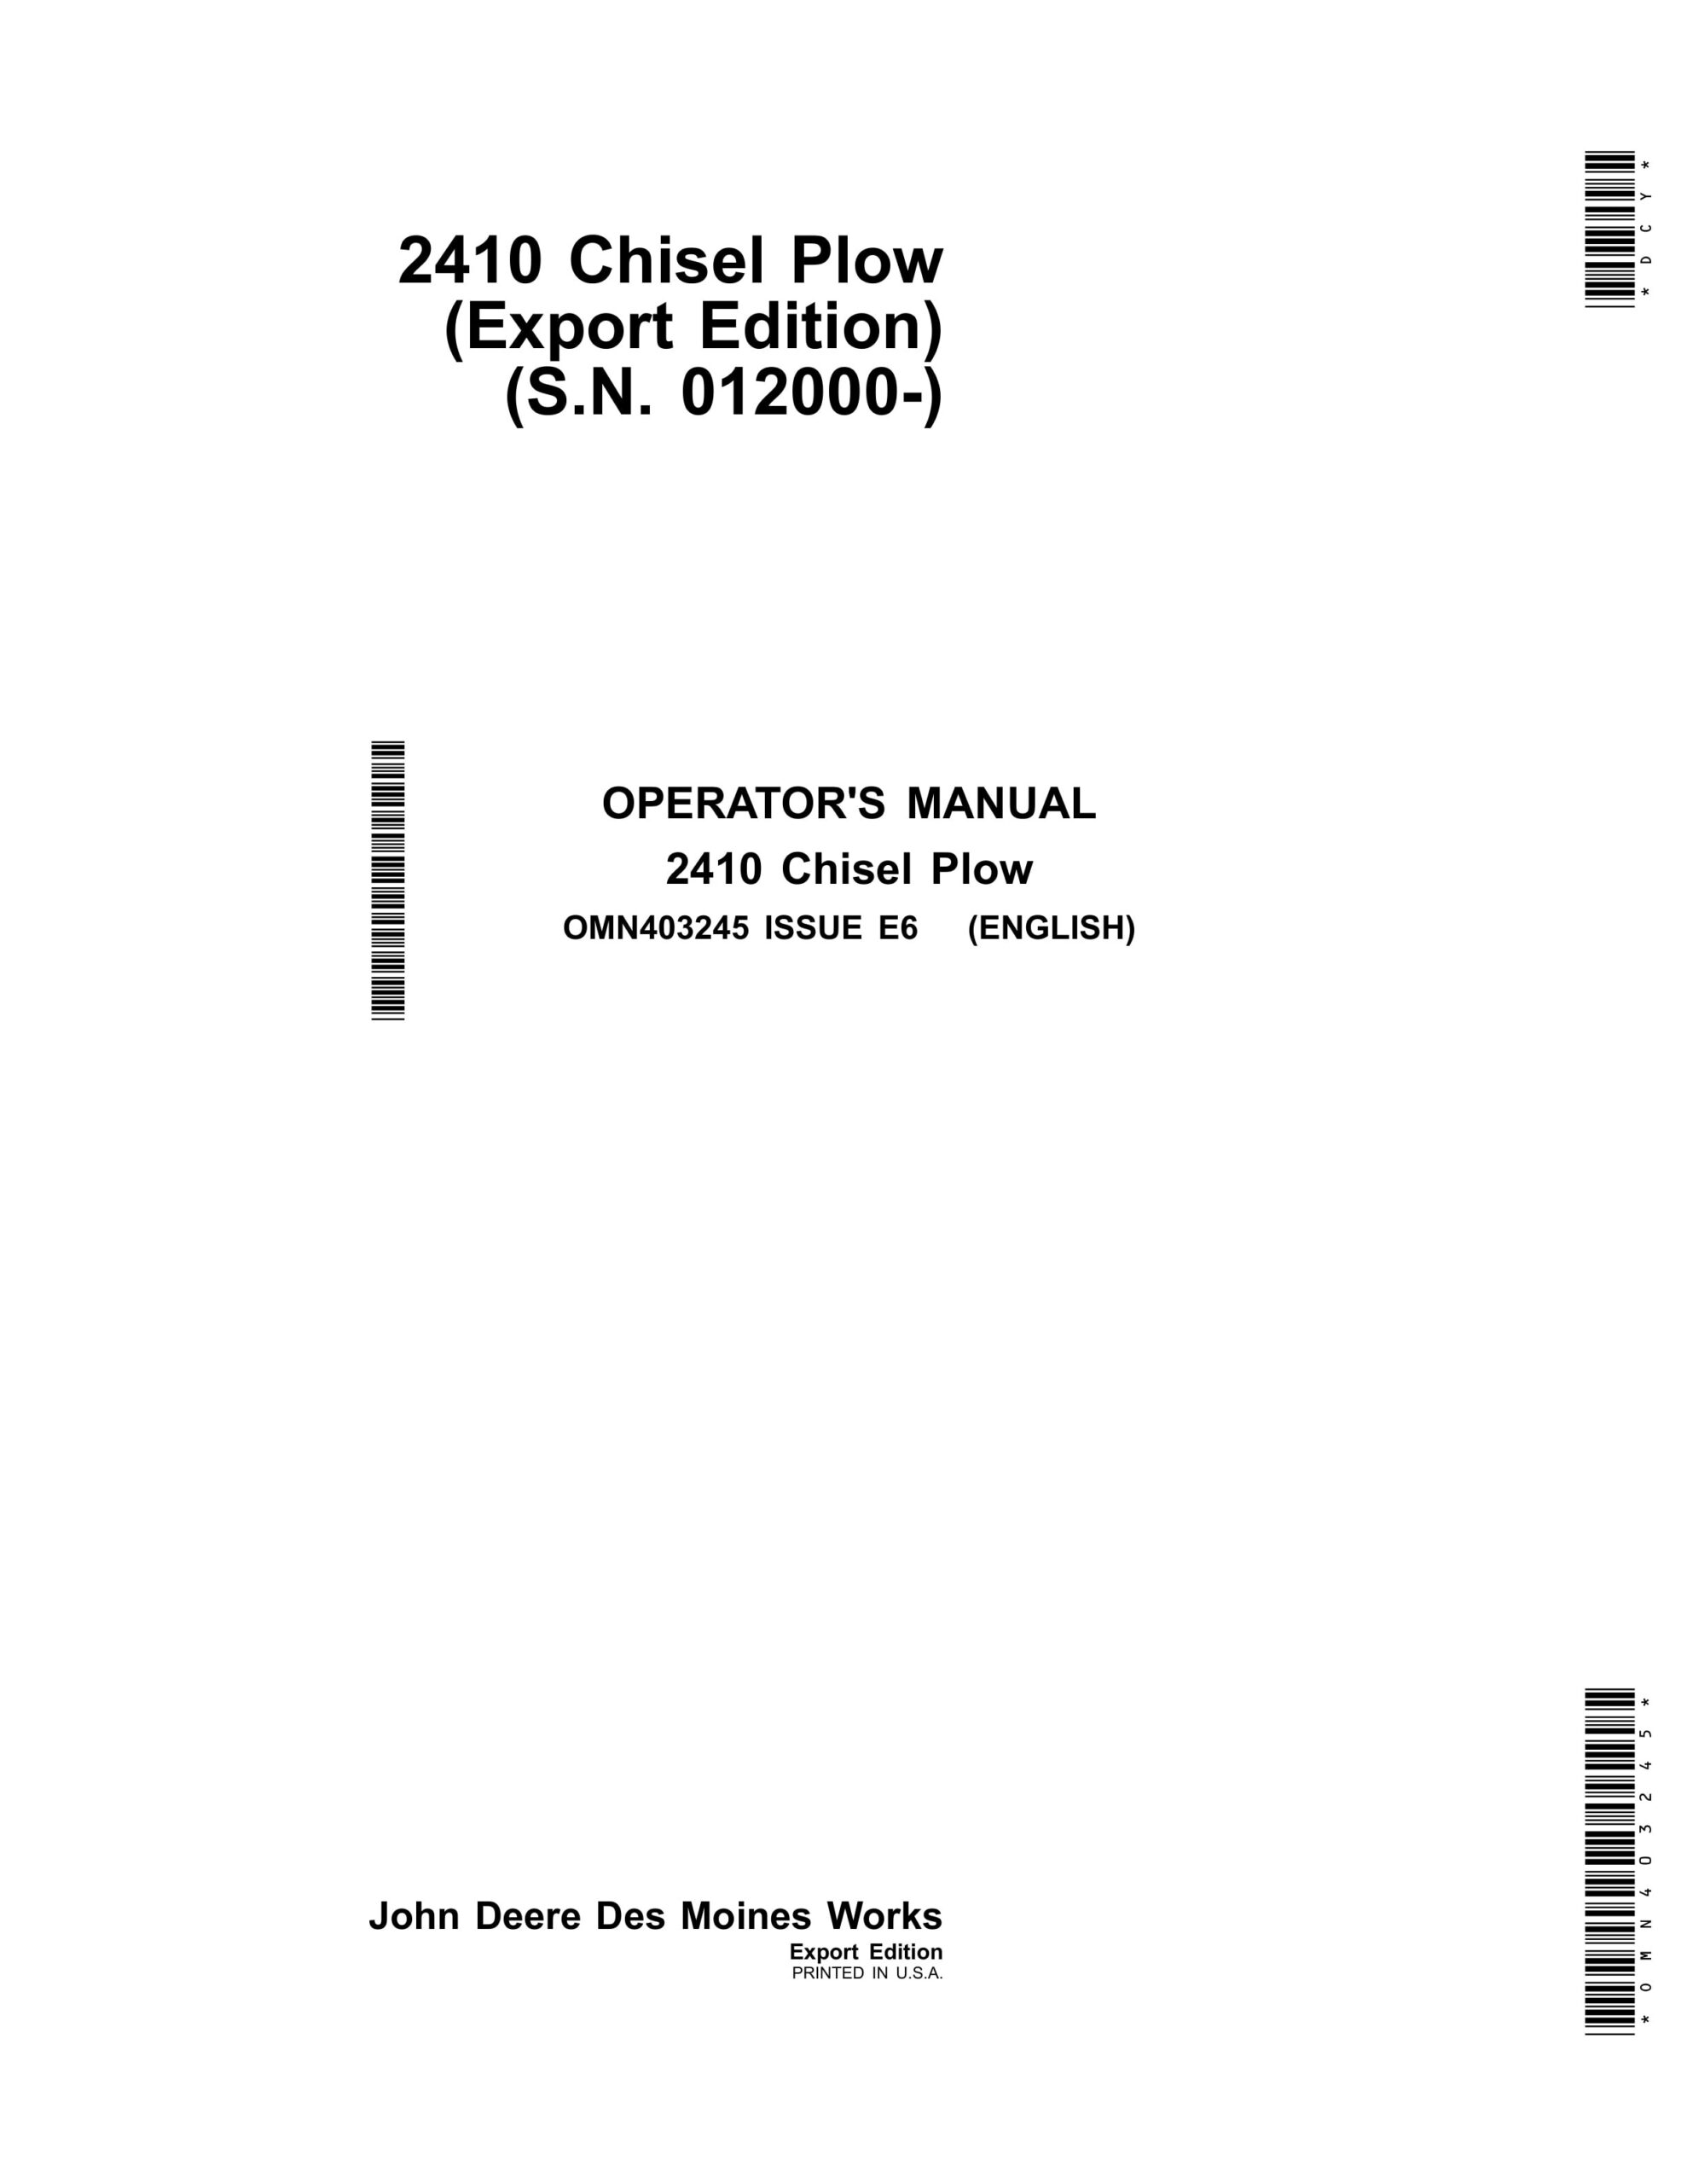 John Deere 2410 Chisel Plow Operator Manual OMN403245-1